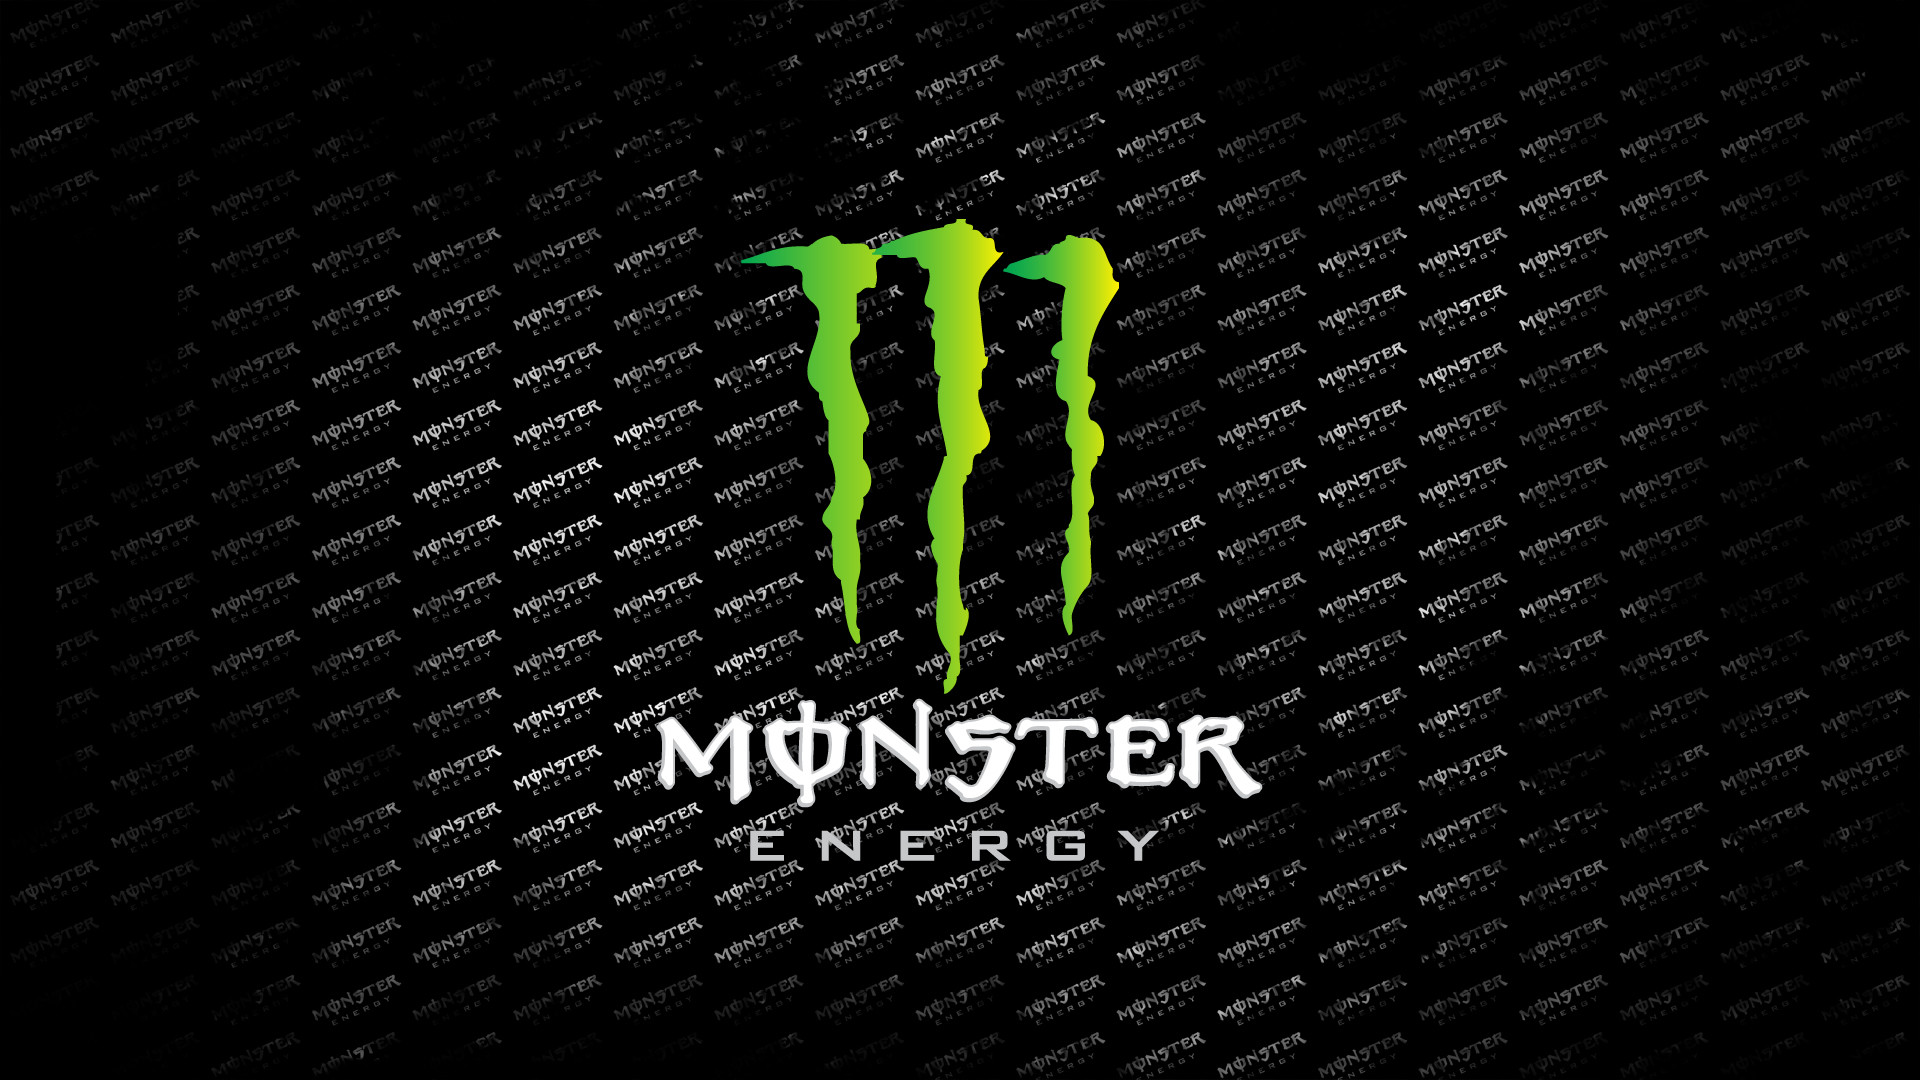 1920x1080 monster energy monster wallpaper download the monster energy 